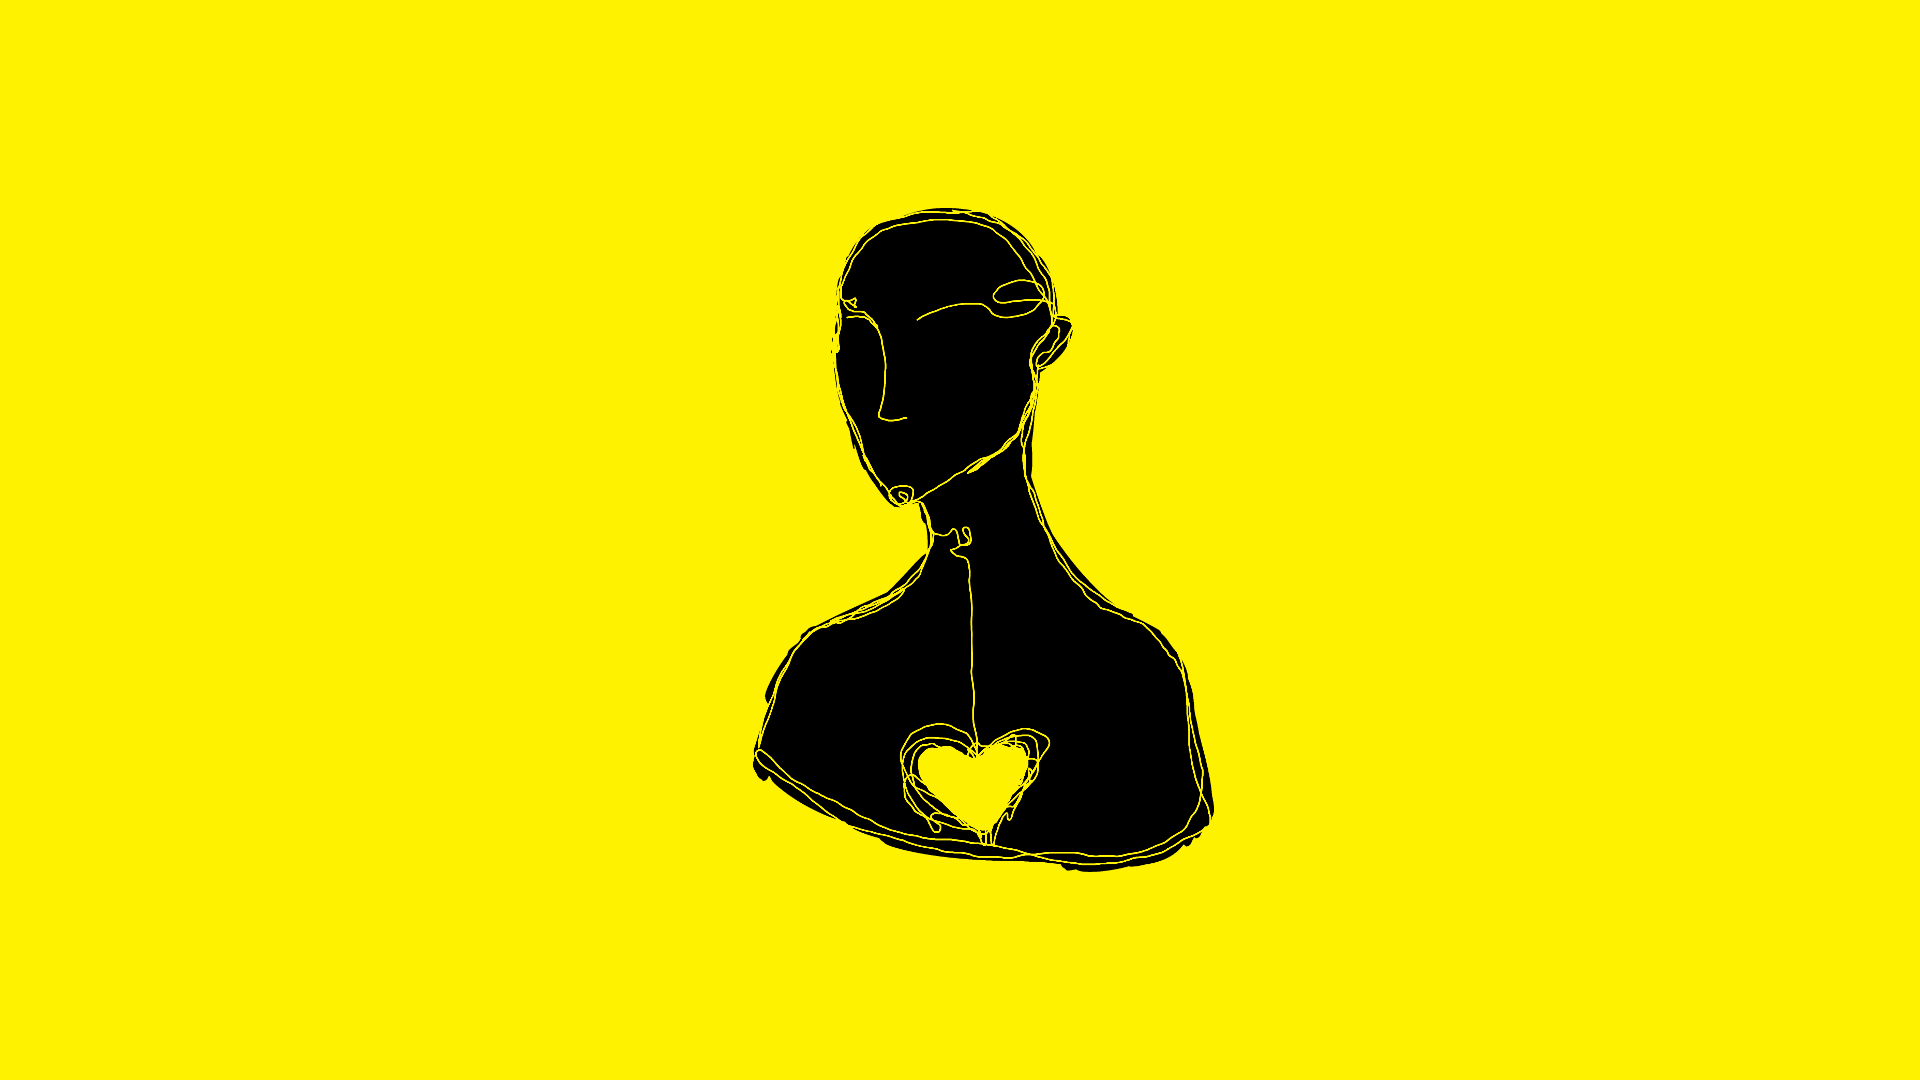 Czarny abstrakcyjny rysunek człowieka na żółtym tle